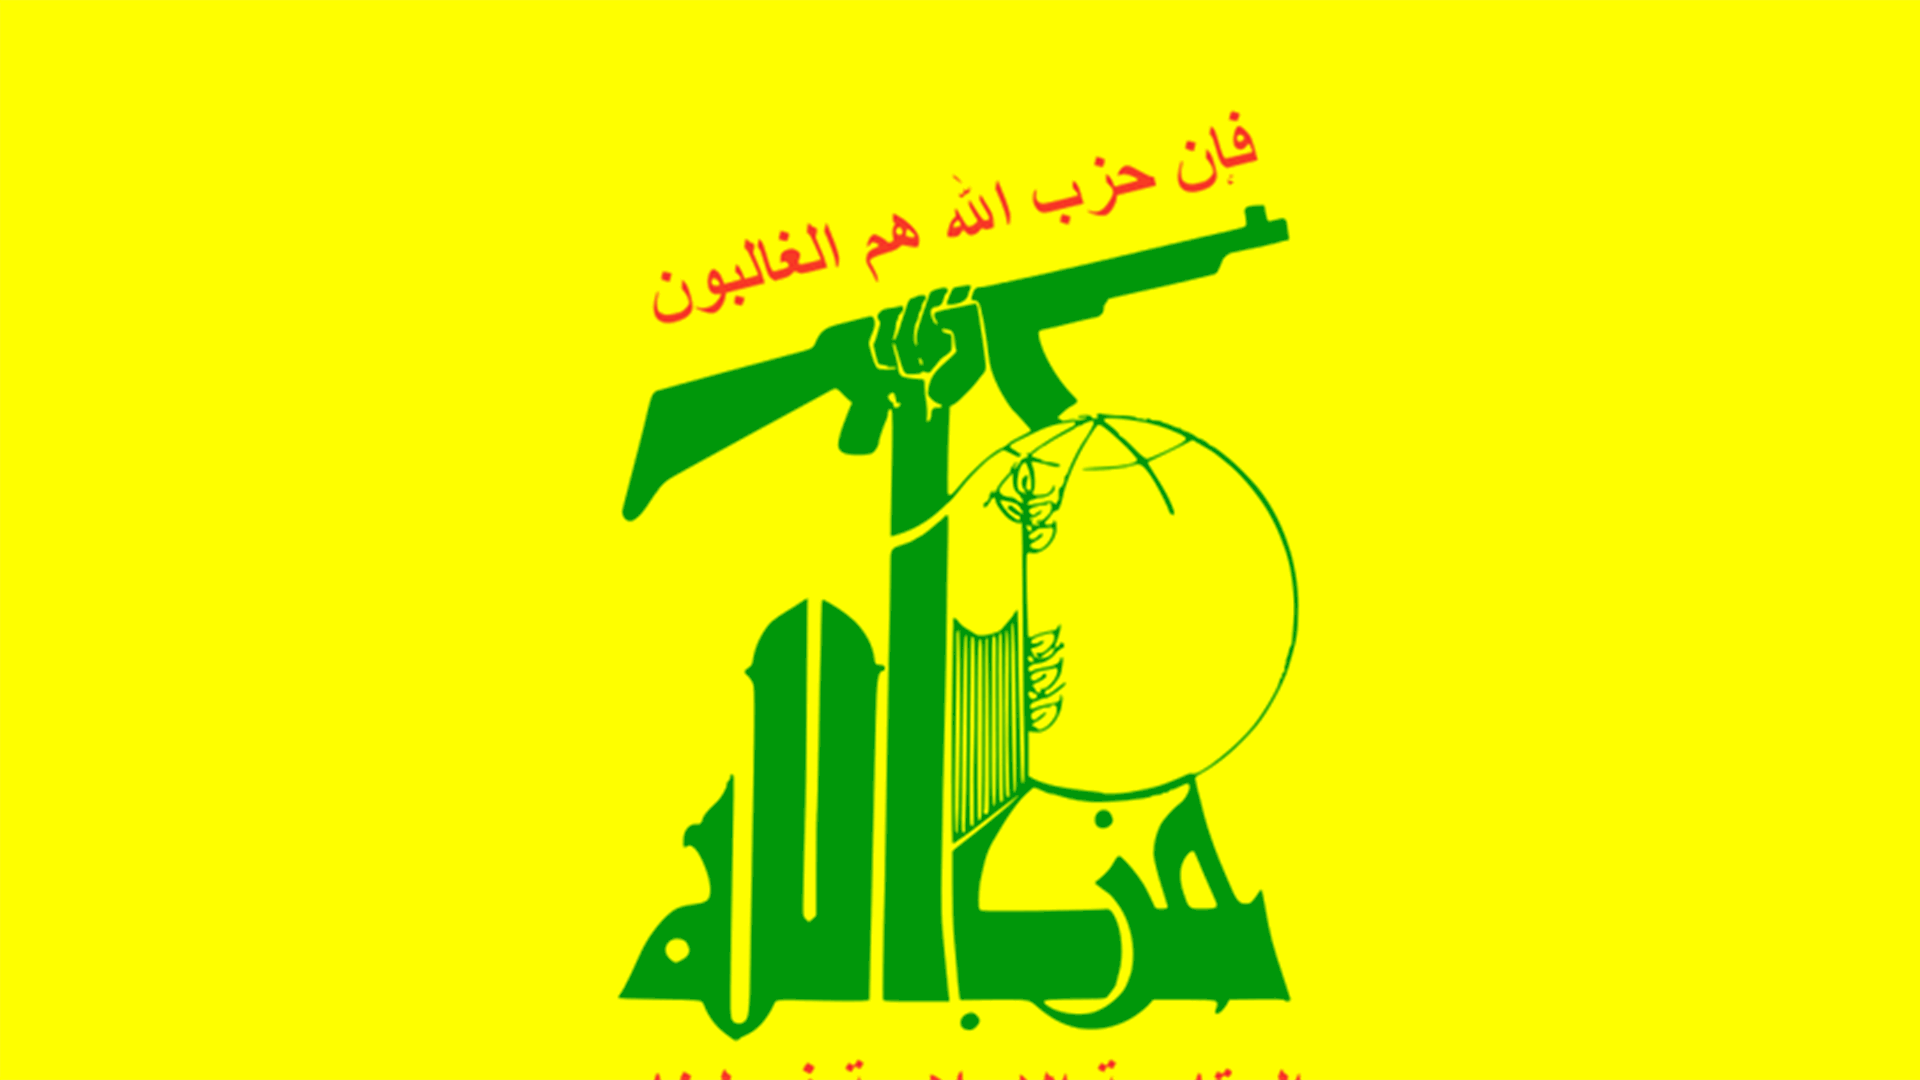 حزب الله: ما صدر من إساءات مرفوض ومستنكر ونحذر بشدة من مسببي الفتن والمستفيدين منها